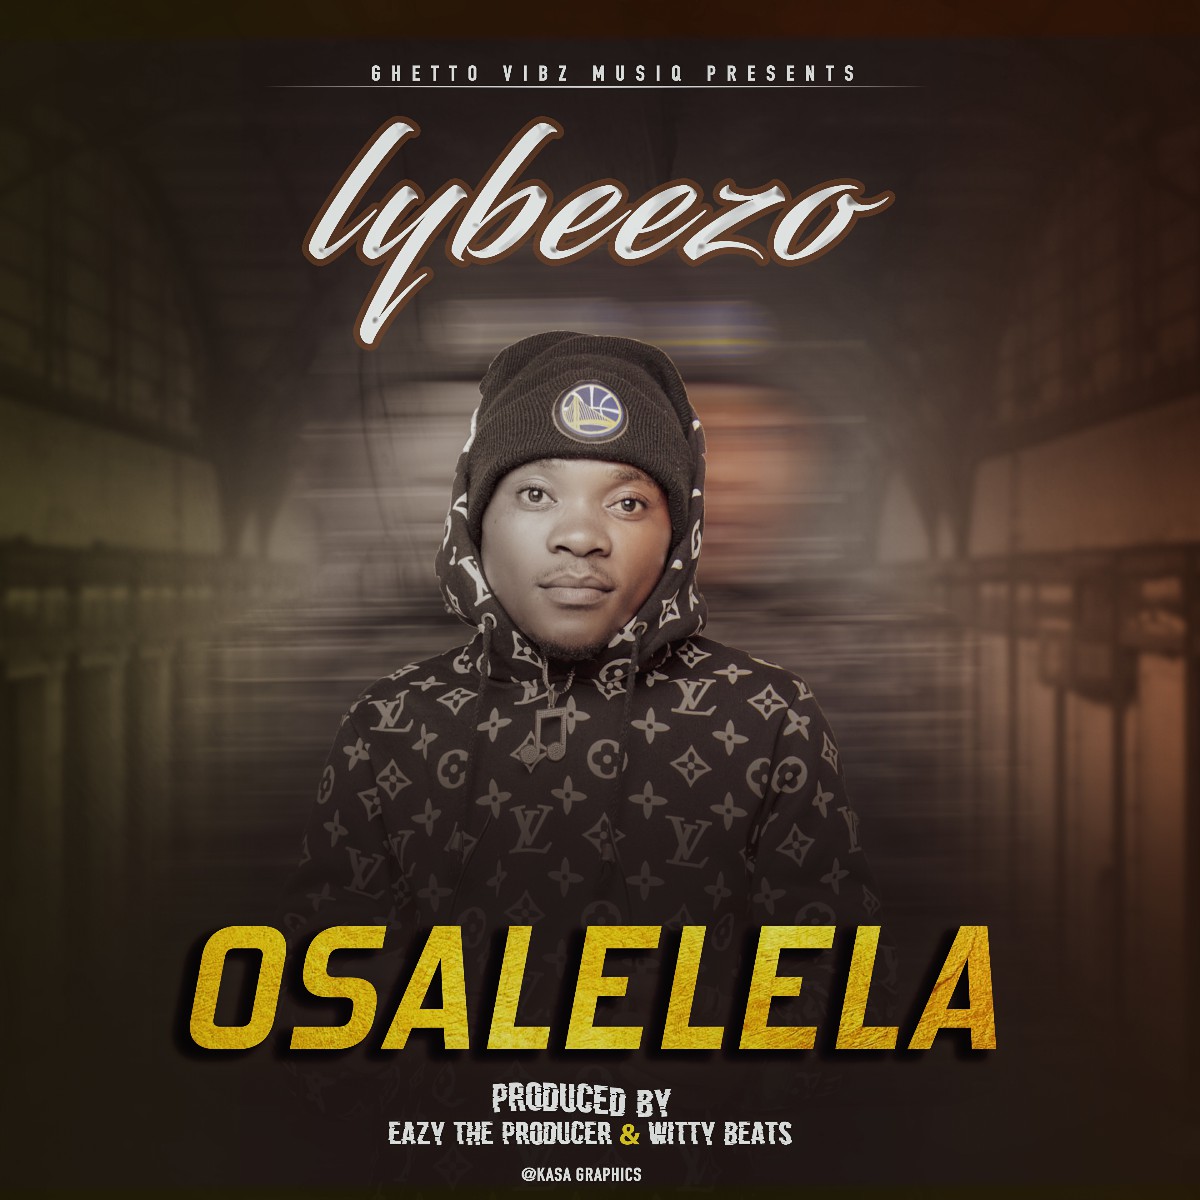 Lybeezo - Osalelela (Prod. EazyTheProducer & Witty Beats)